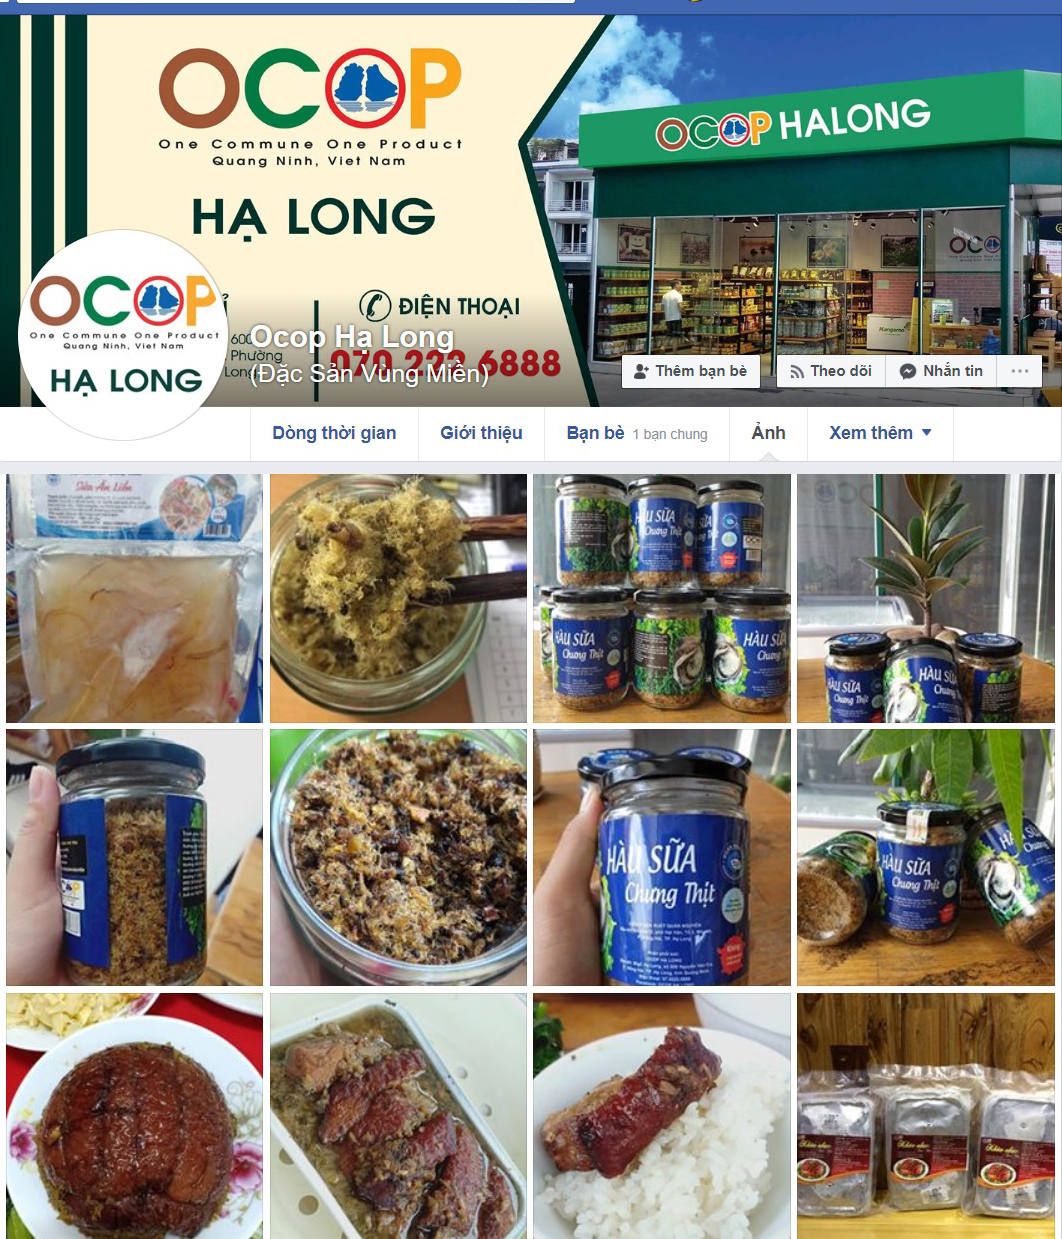 Trang facebook OCOP Hạ Long của cửa hàng OCOP Hạ Long do anh Ngô Huy Hoàng quản lý nhận được sự tương tác của nhiều người dân. 